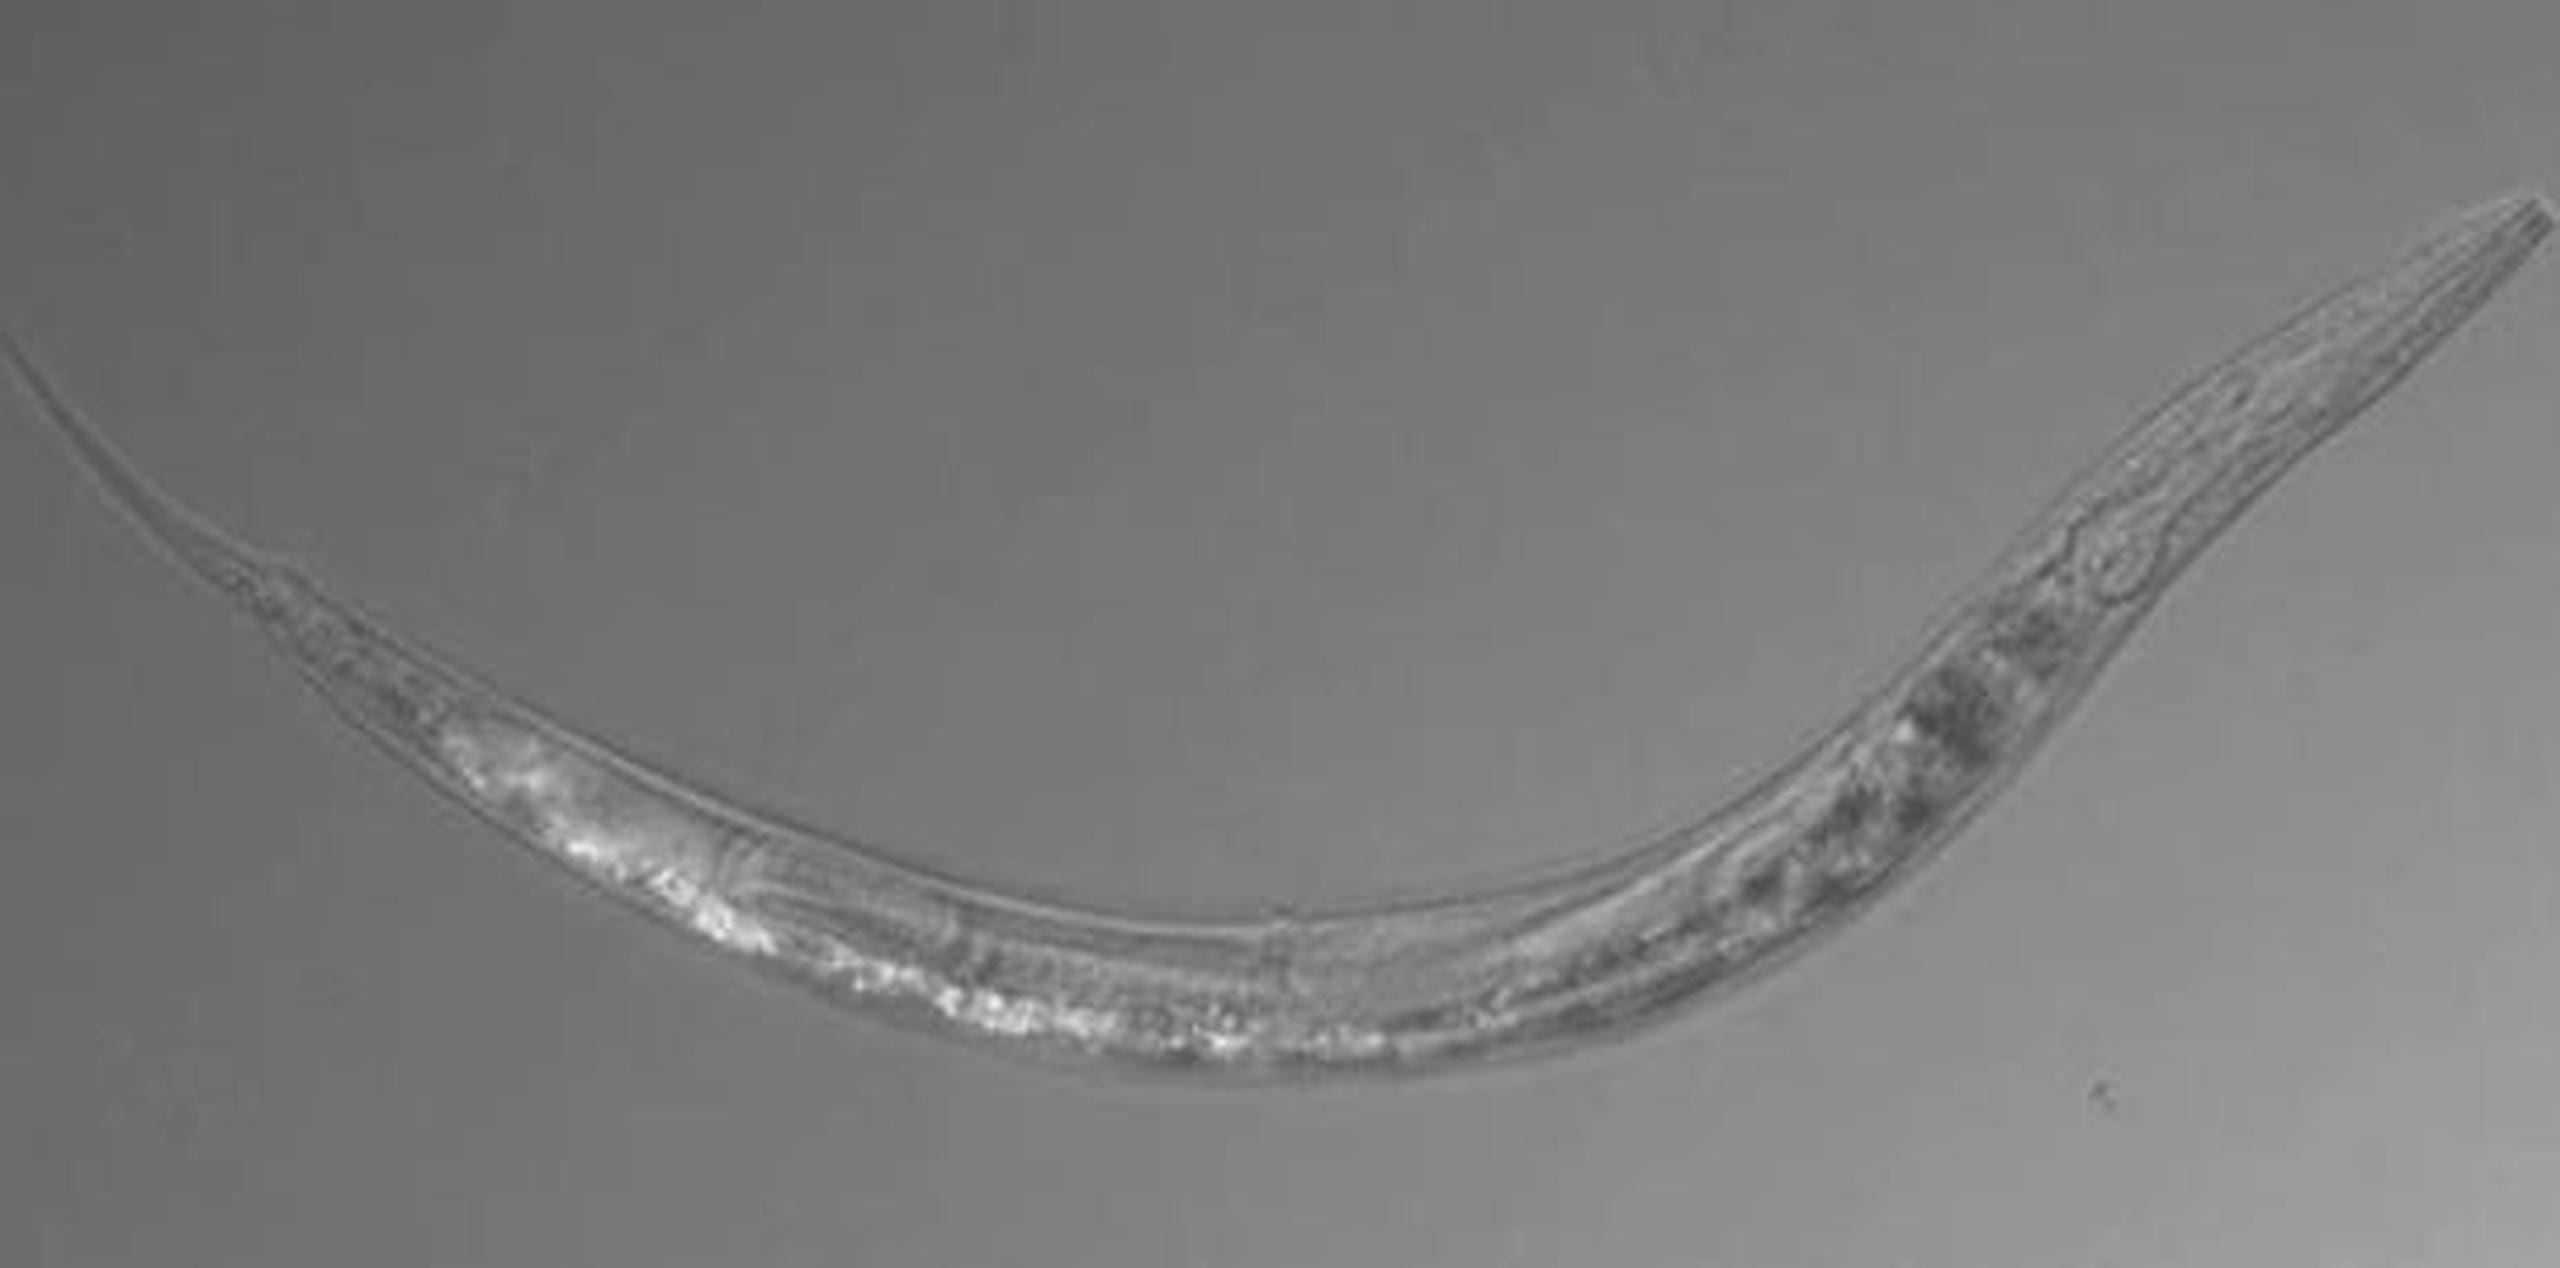 Una de las especies de nematodo halladas en el Lago Mono (Instituto de Tecnología de California / GDA)